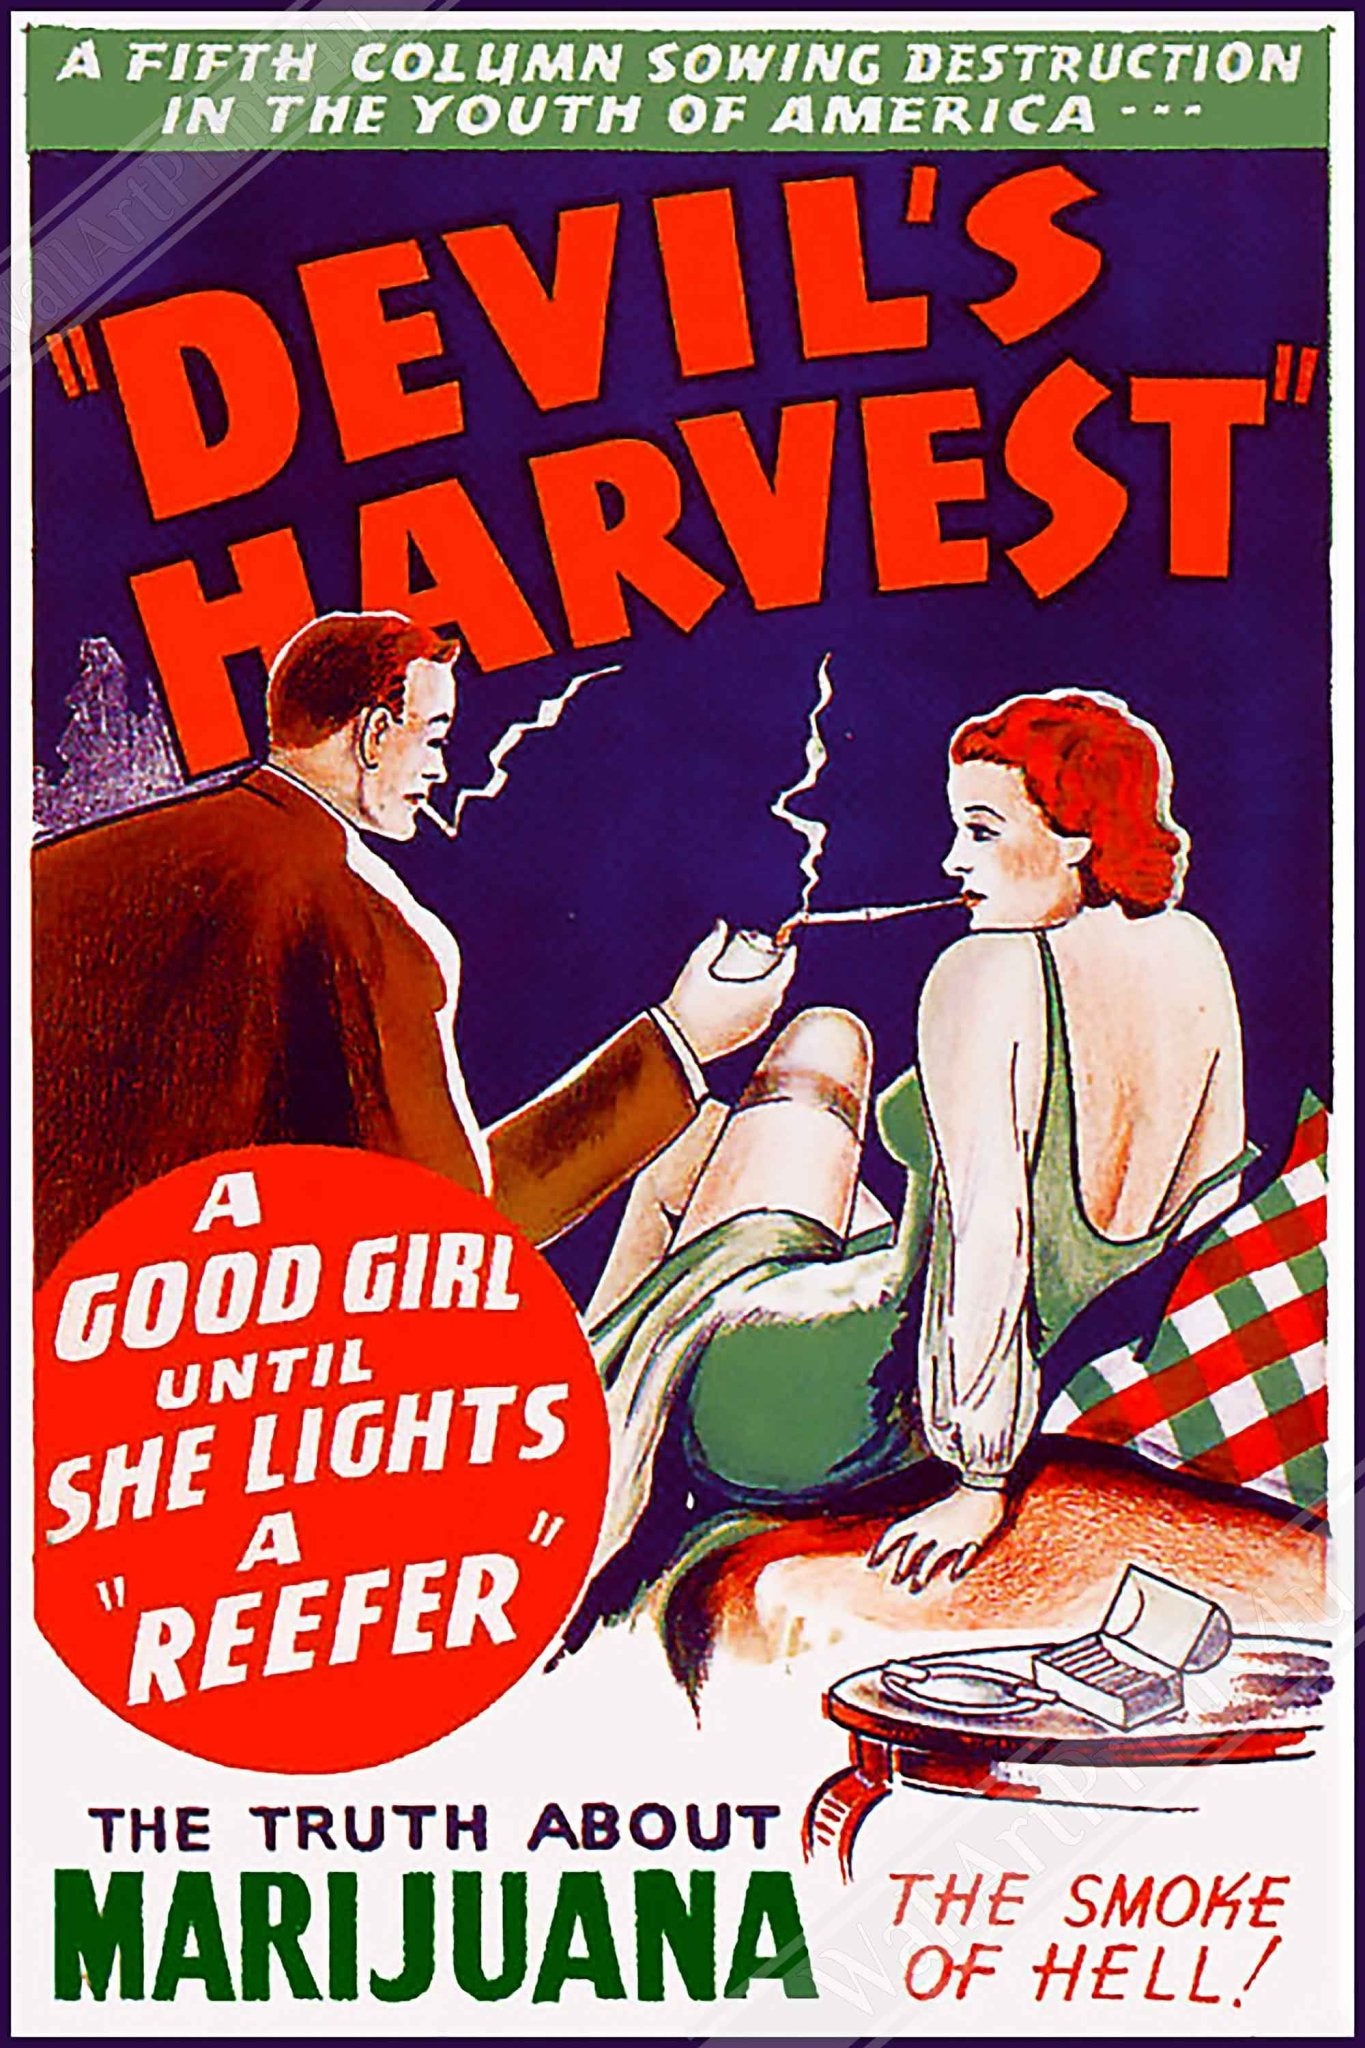 Devils Harvest Propaganda Framed, "Scary" Cannabis Propaganda - Marijuana Propaganda Framed Print - WallArtPrints4U